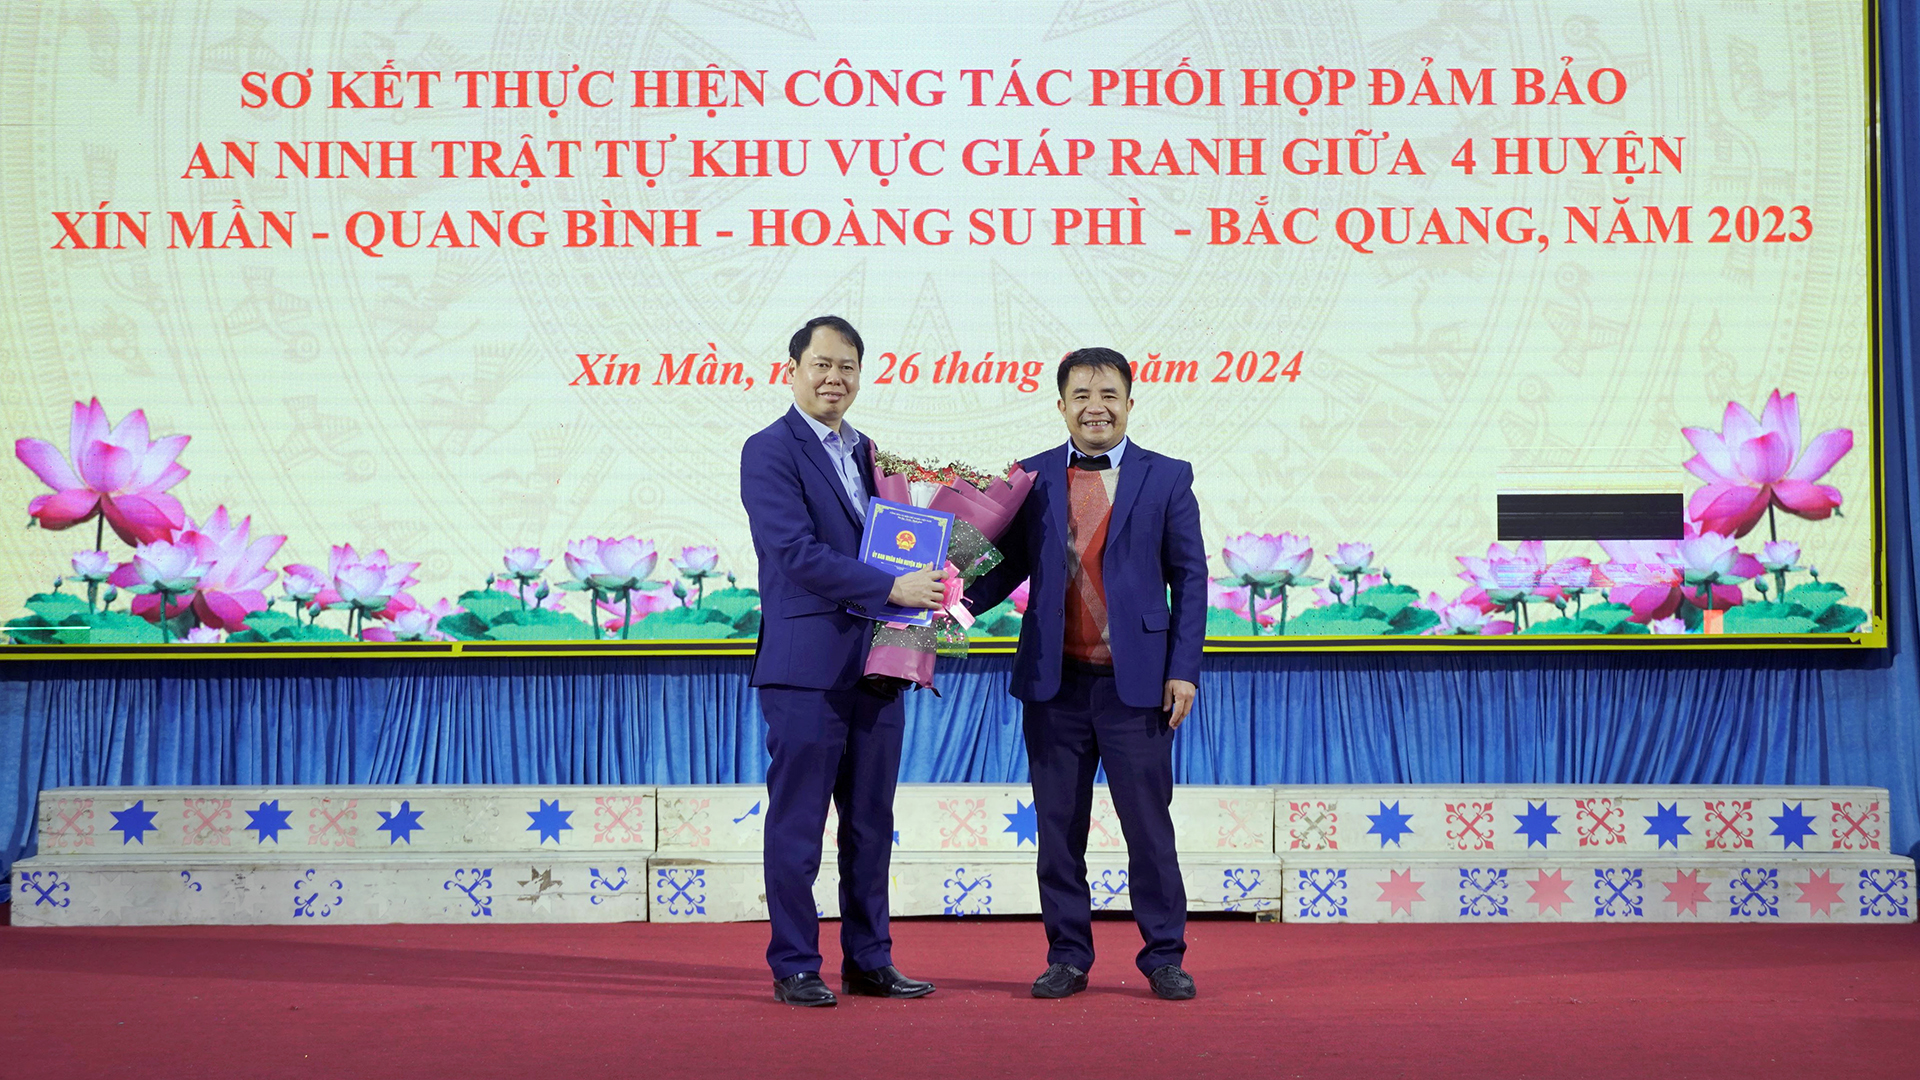 Hội nghị Sơ kết thực hiện công tác phối hợp đảm bảo ANTT khu vực giáp ranh 4 huyện Xín Mần – Quang Bình – Bắc Quang – Hoàng Su Phì năm 2023